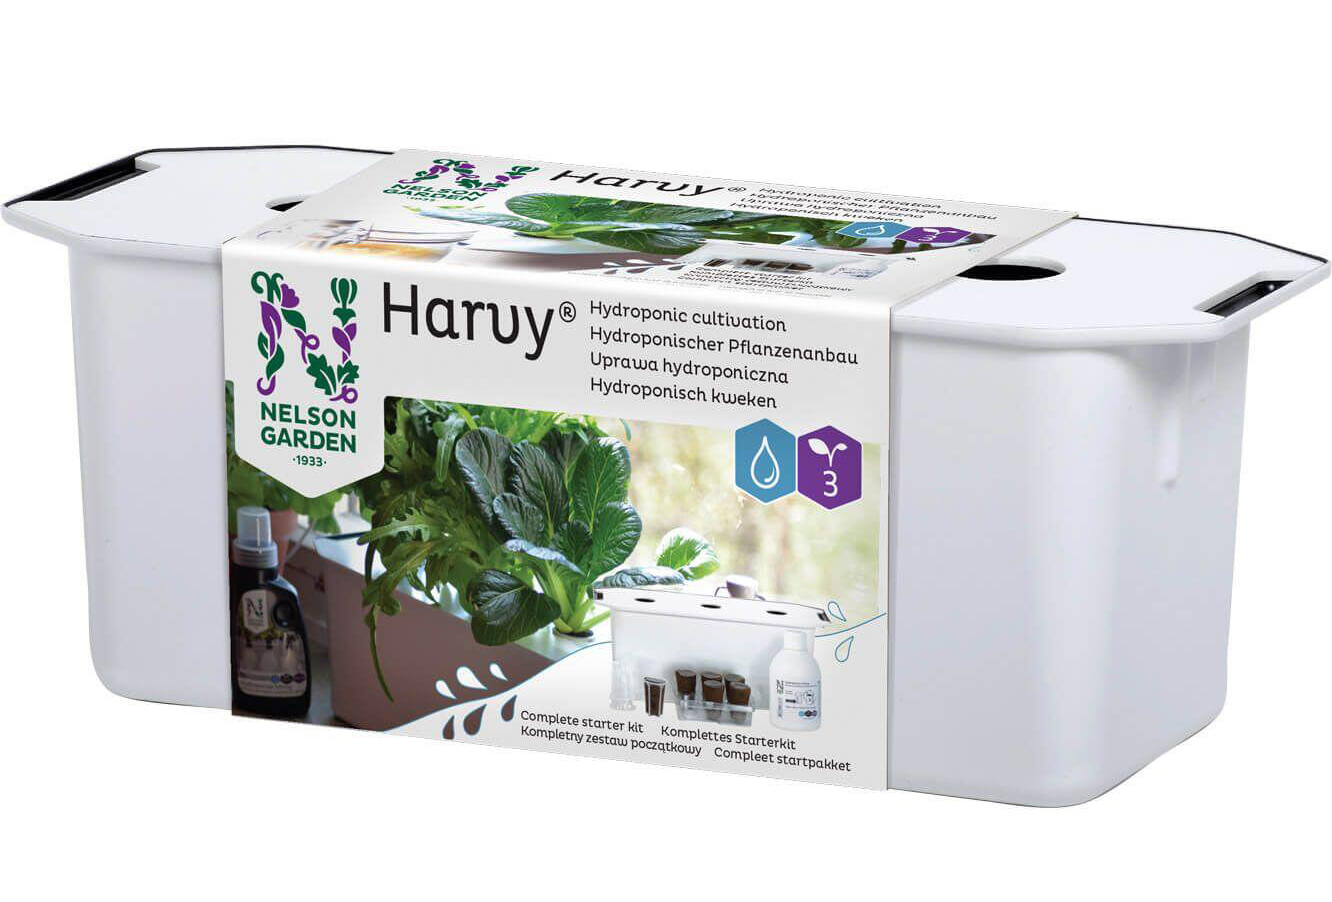 Nelson Garden Harvy® 3 Hydrokultursystem für drei Pflanzen – Komplettes Starter-Set inklusive Pflanzennahrung sowie Basilikum- und Salatsamen